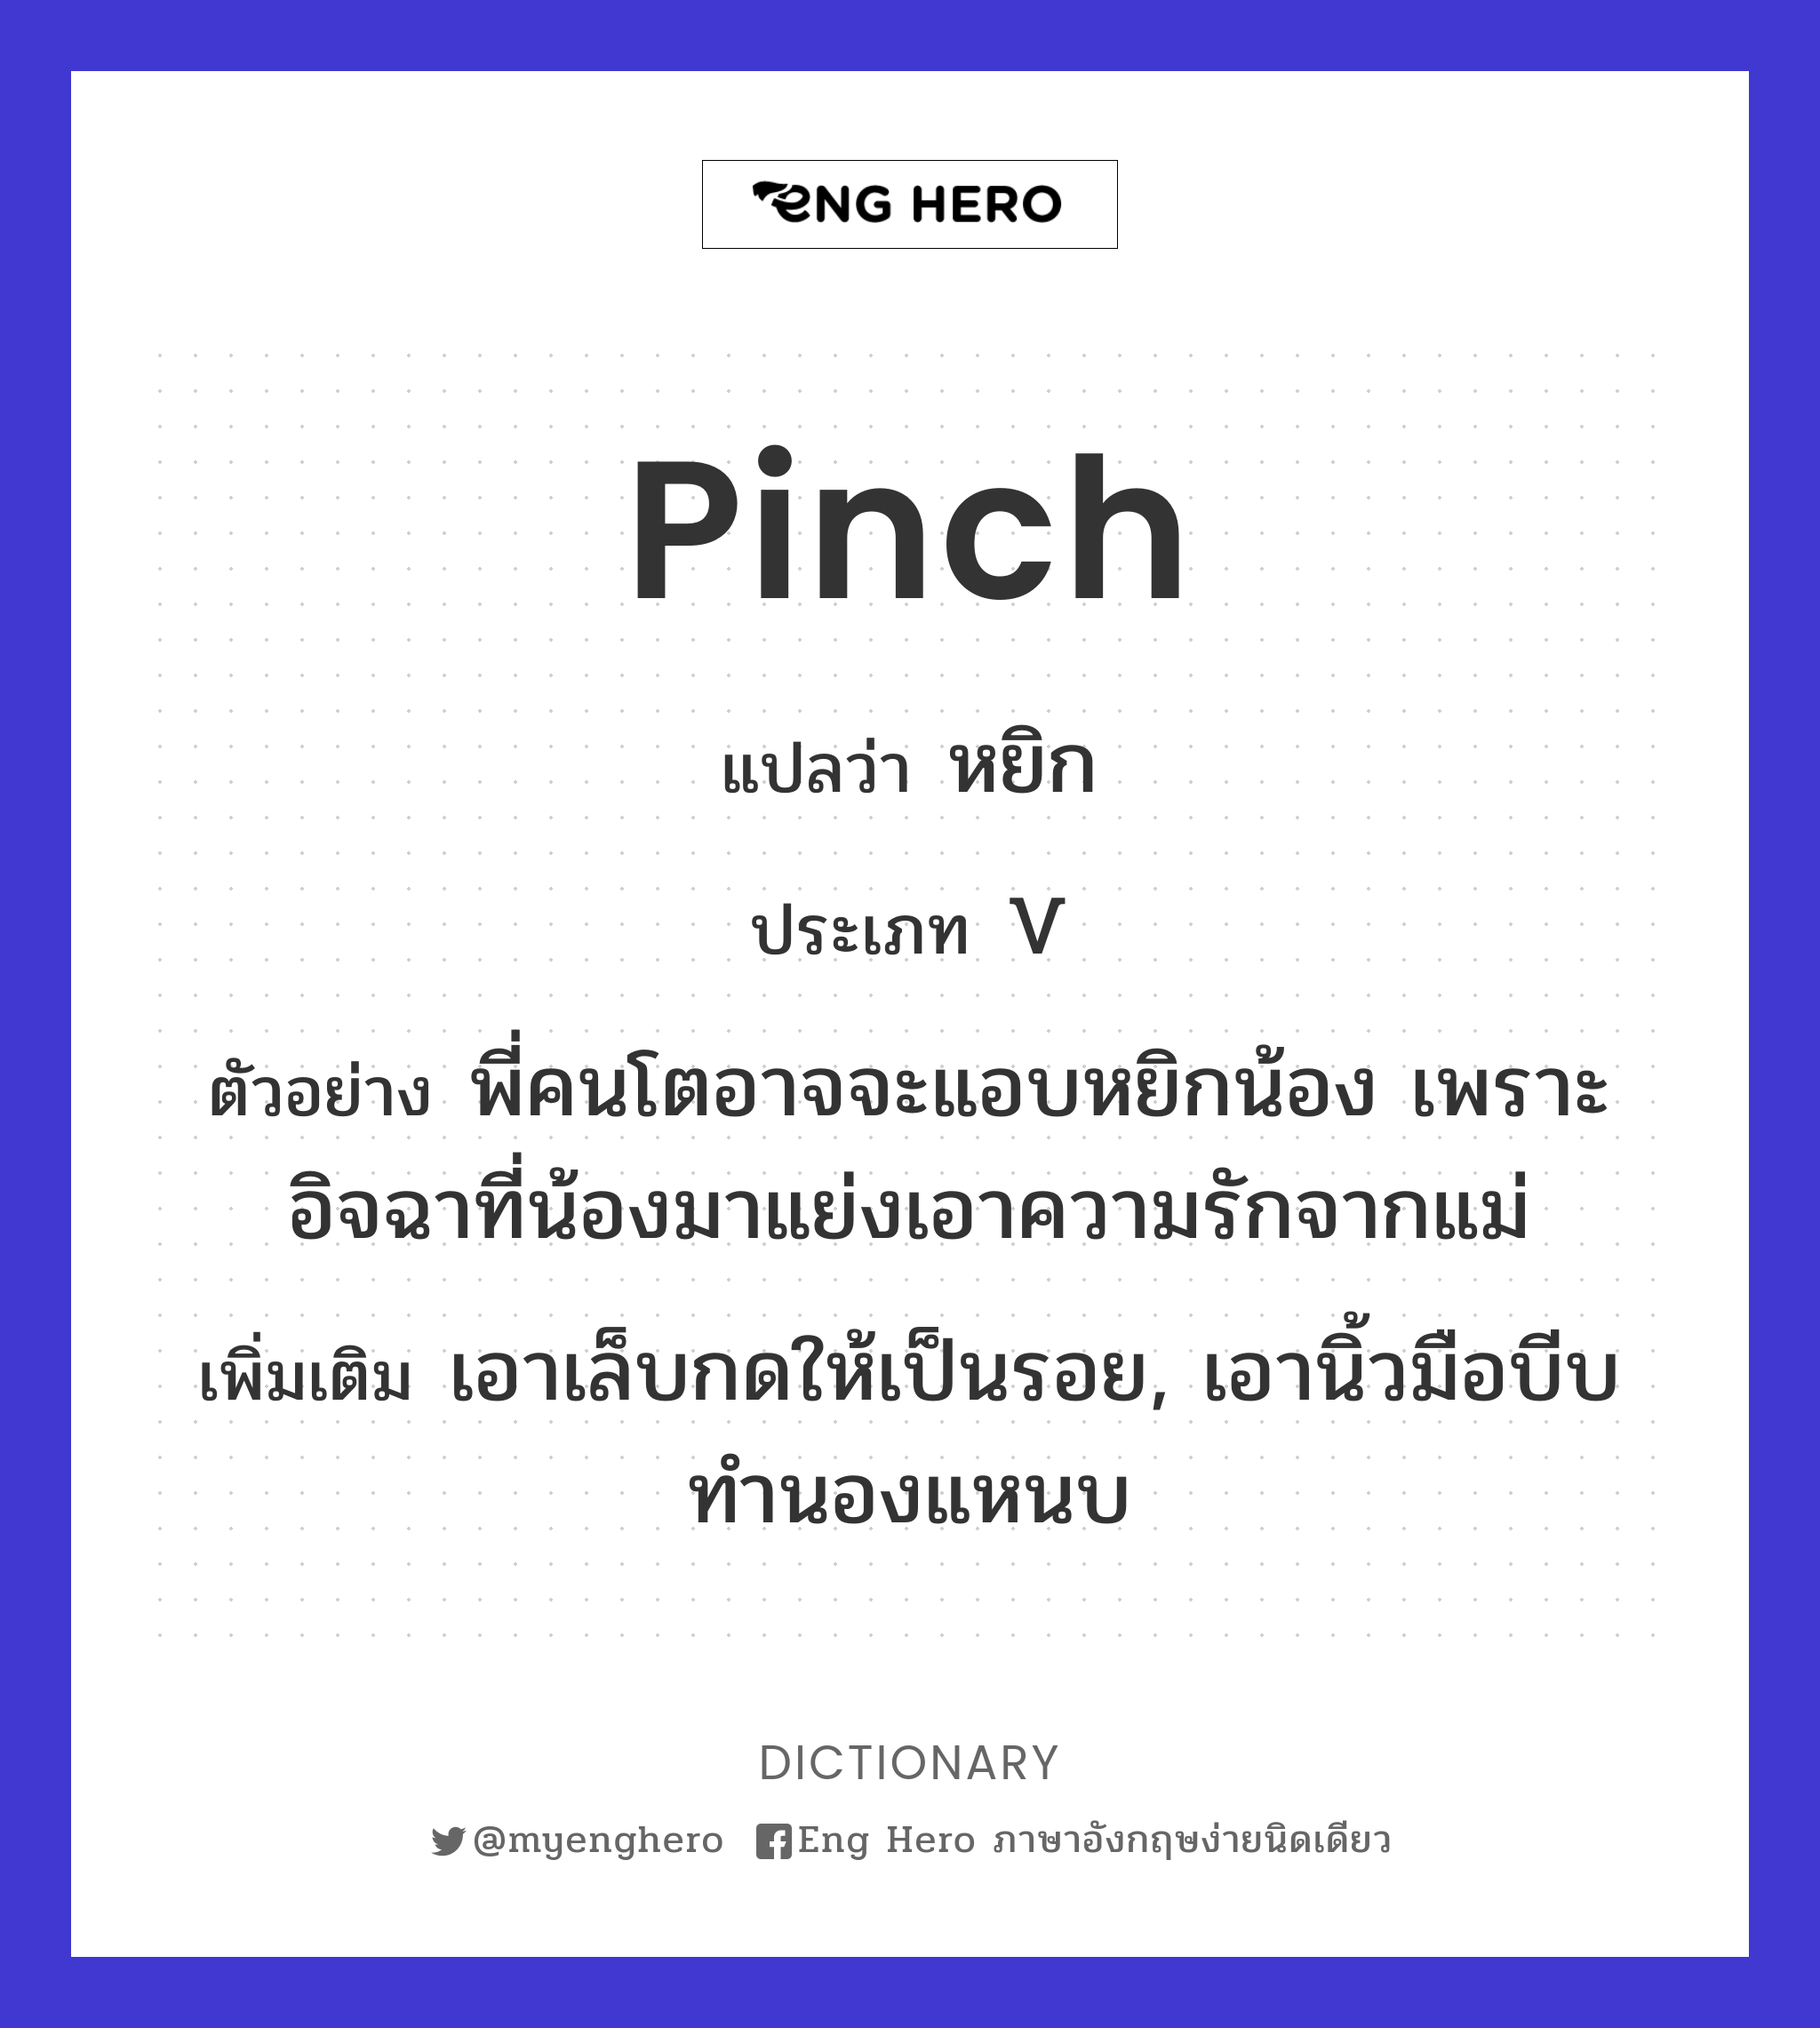 pinch